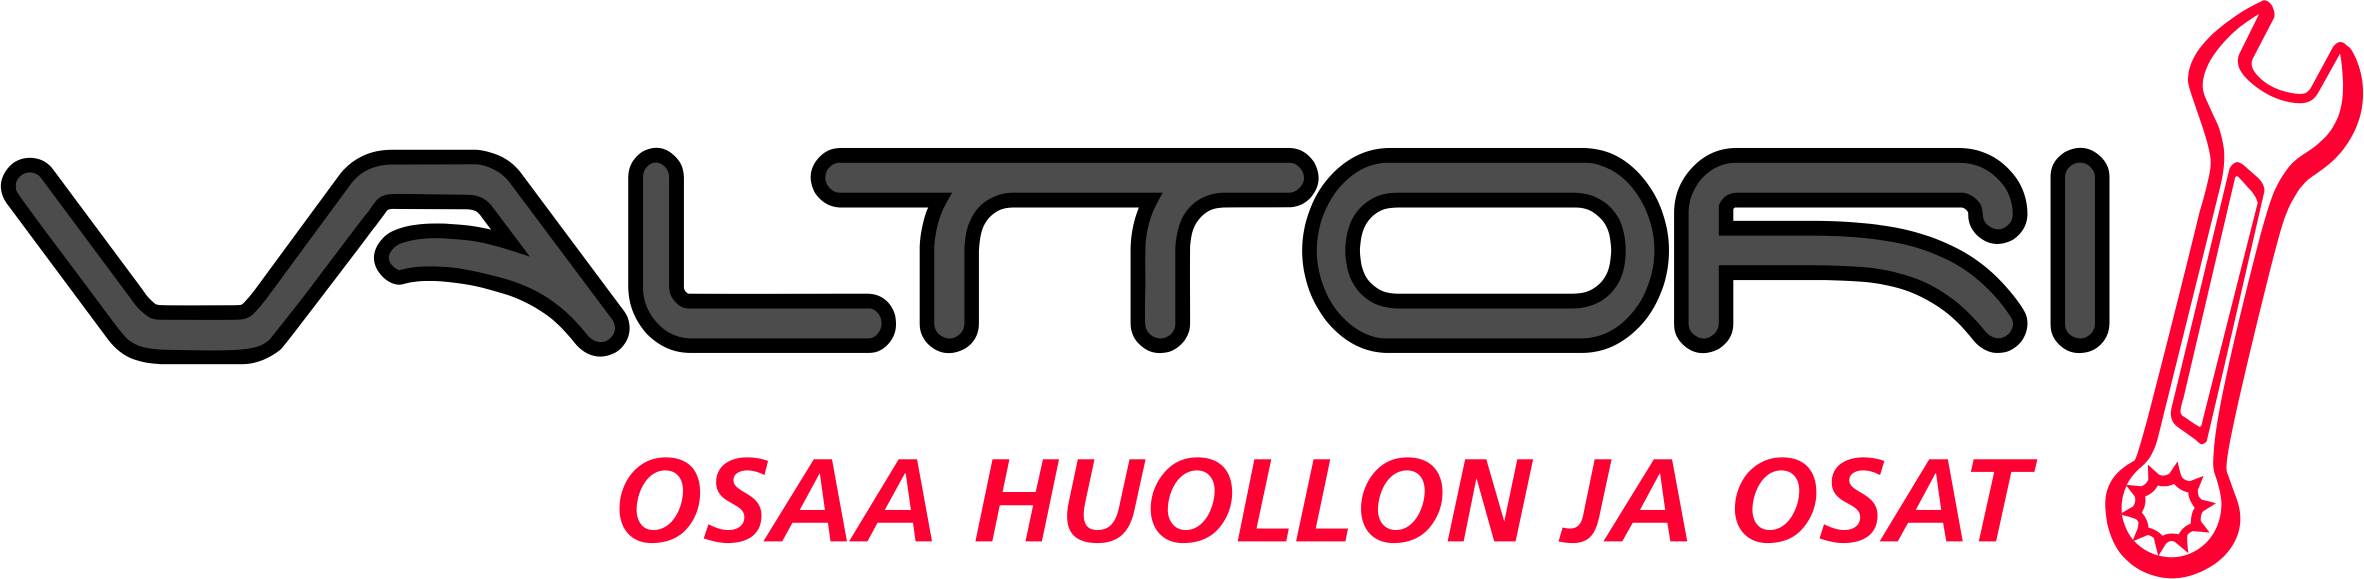 Valttori logo 2015